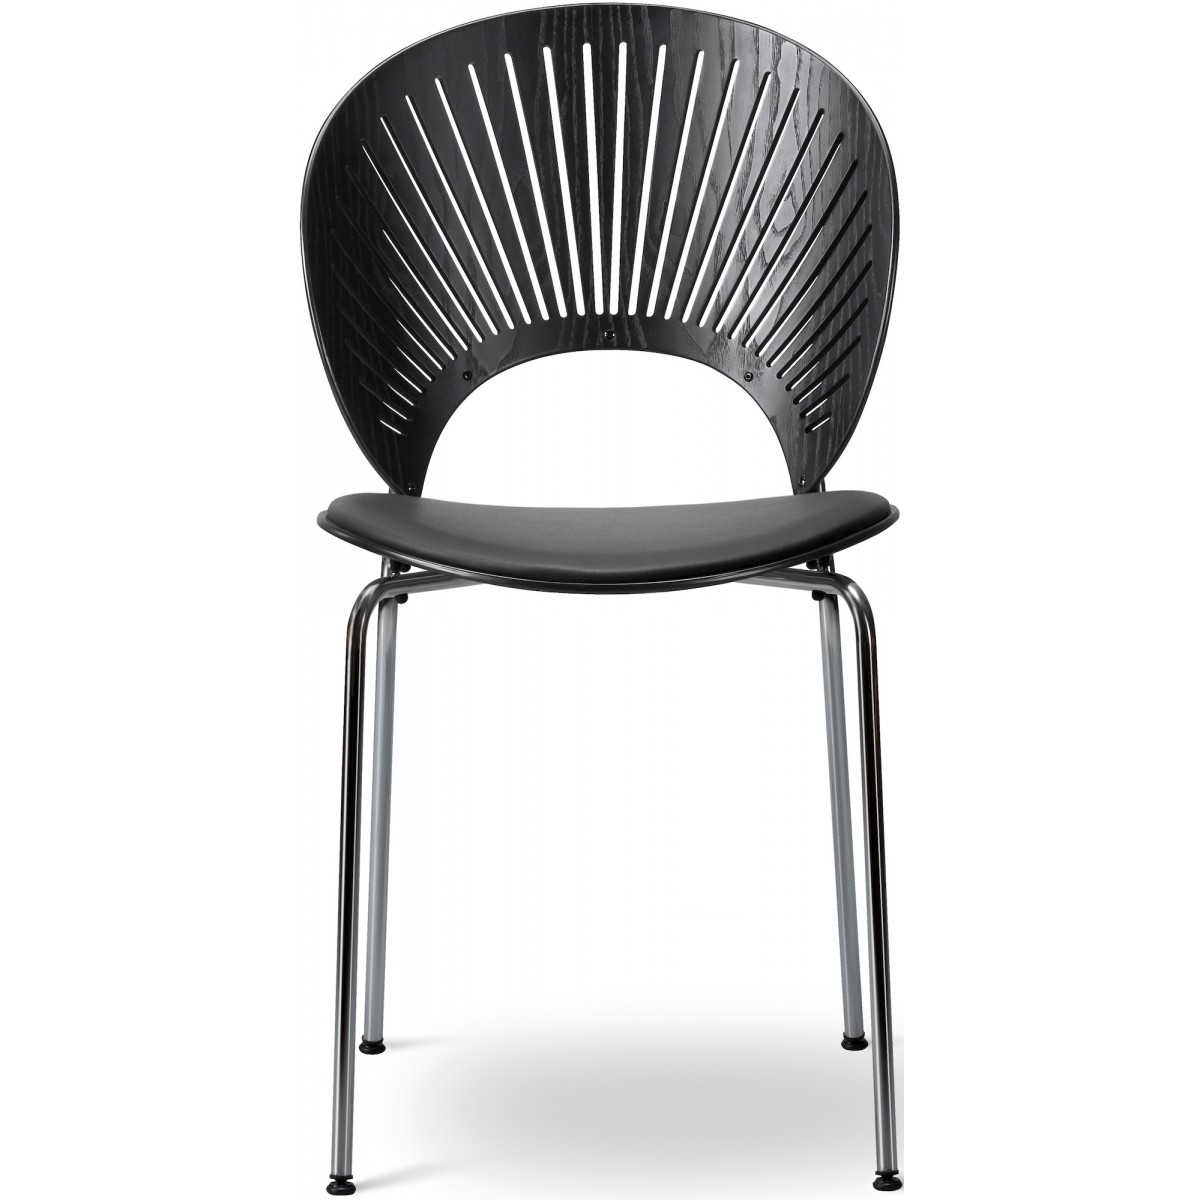 ÉPUISÉ cuir Omni 301 + frêne noir / noir – assise rembourrée – chaise Trinidad 3396